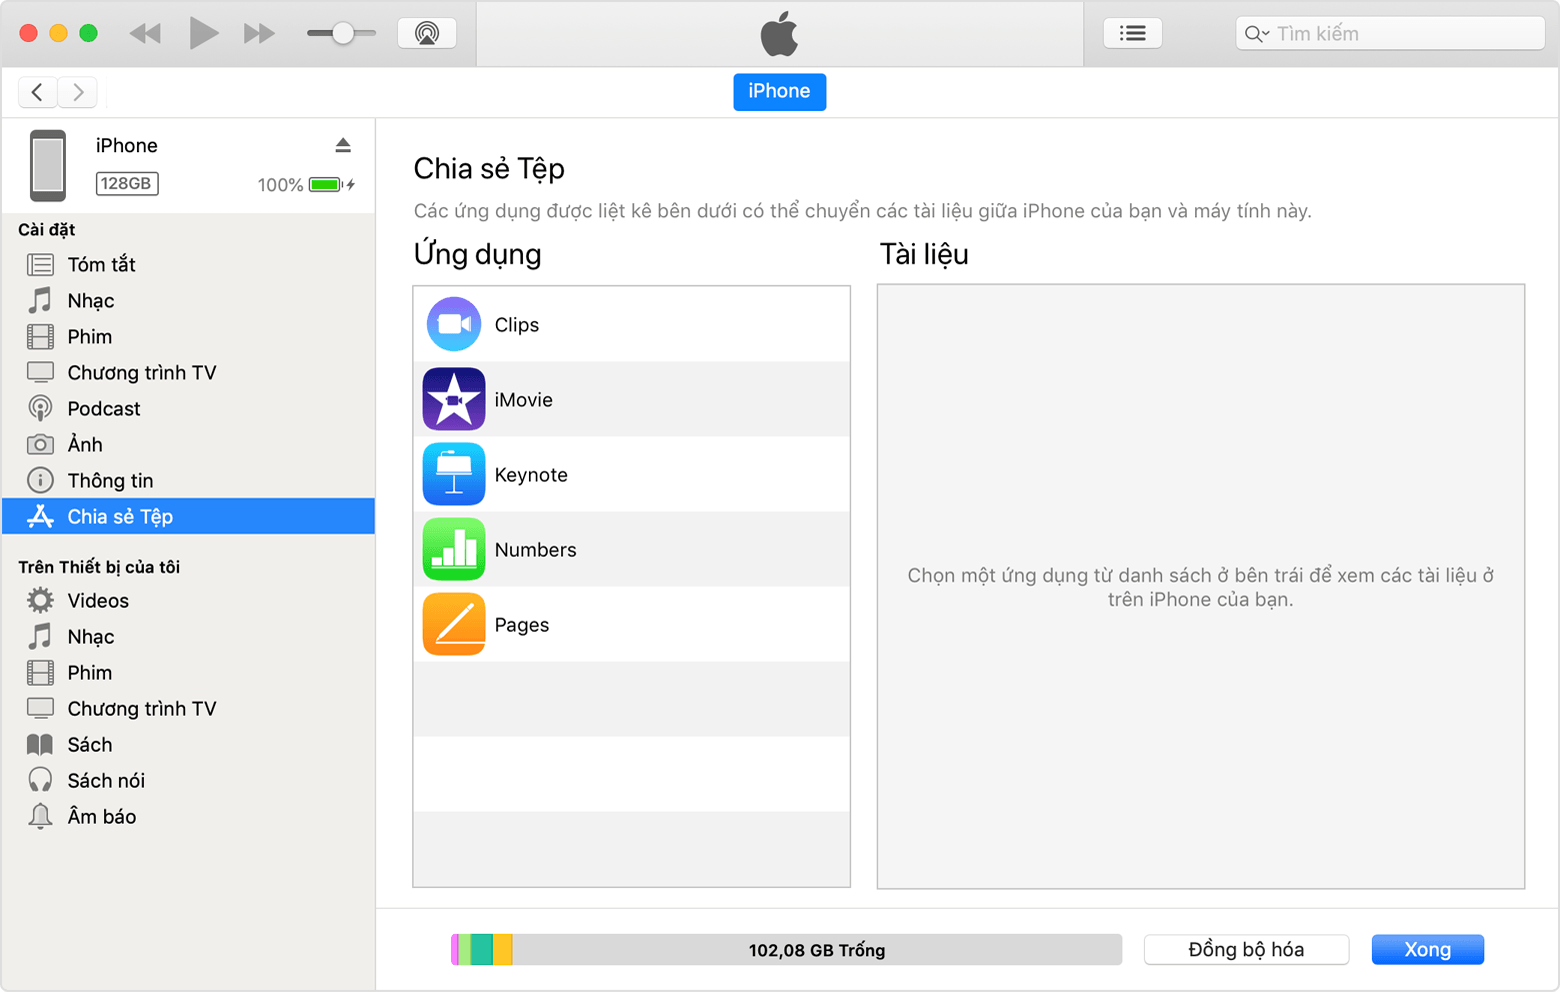 Cửa sổ iTunes với iPhone được kết nối và Chia sẻ tệp được chọn từ danh sách.